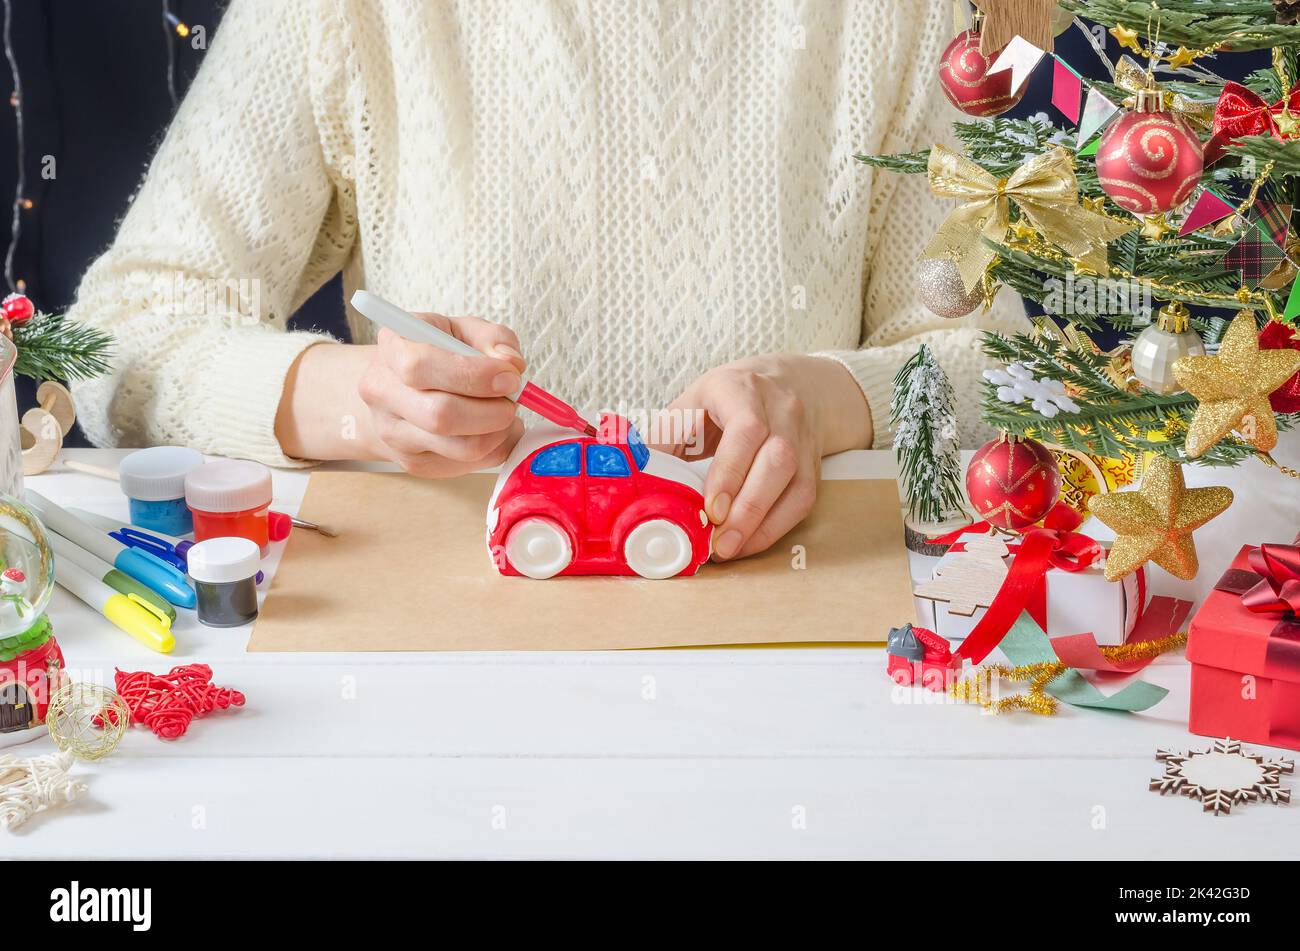 Schritt-für-Schritt Foto-Anleitung für Weihnachten Dekor - ein Mädchen malt eine Gipsmaschine, Schritt 3 - Färben des Körpers mit einem Filzstift Stockfoto